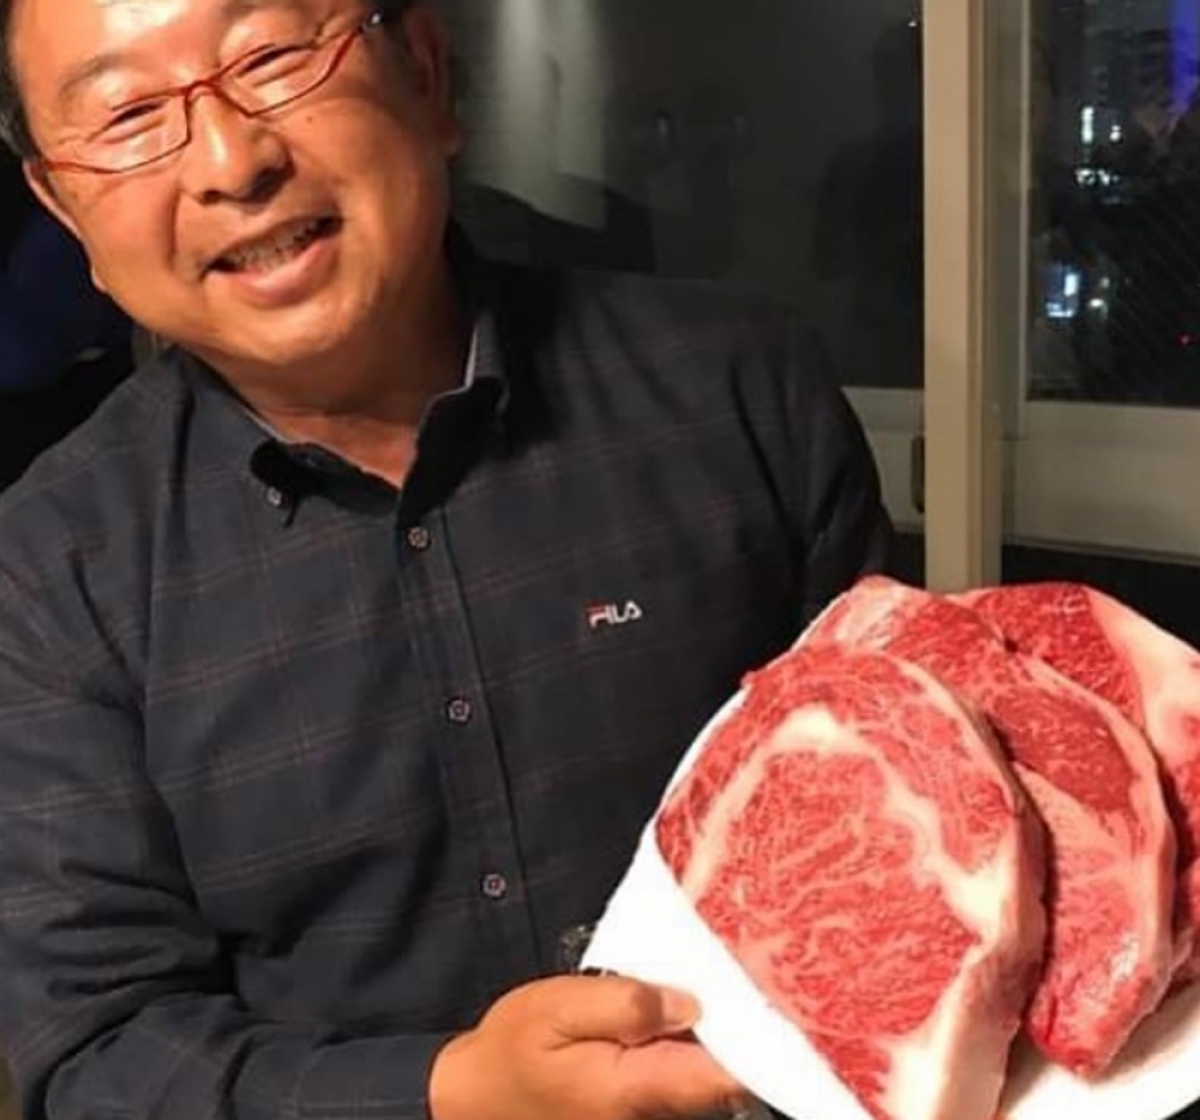 Được gọi là Ozaki (miếng thịt trong bánh), loại thịt bò thượng hạng này là sản phẩm từ trang trại ở Nhật Bản.